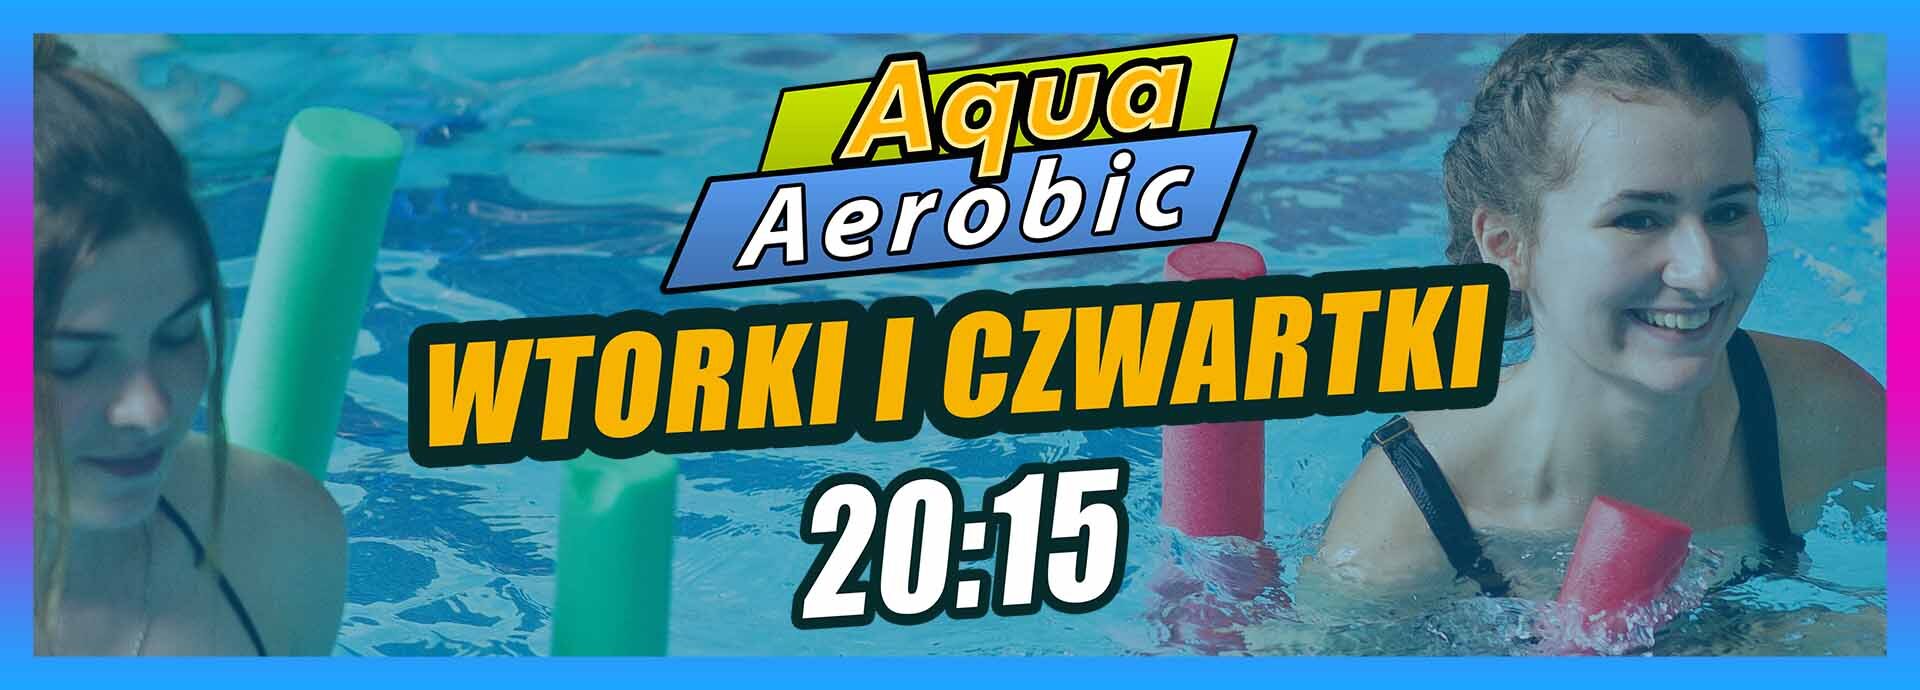 baner aqua aerobiku zmiana godzin zajęć na 20:15 we wtorki i czwartki